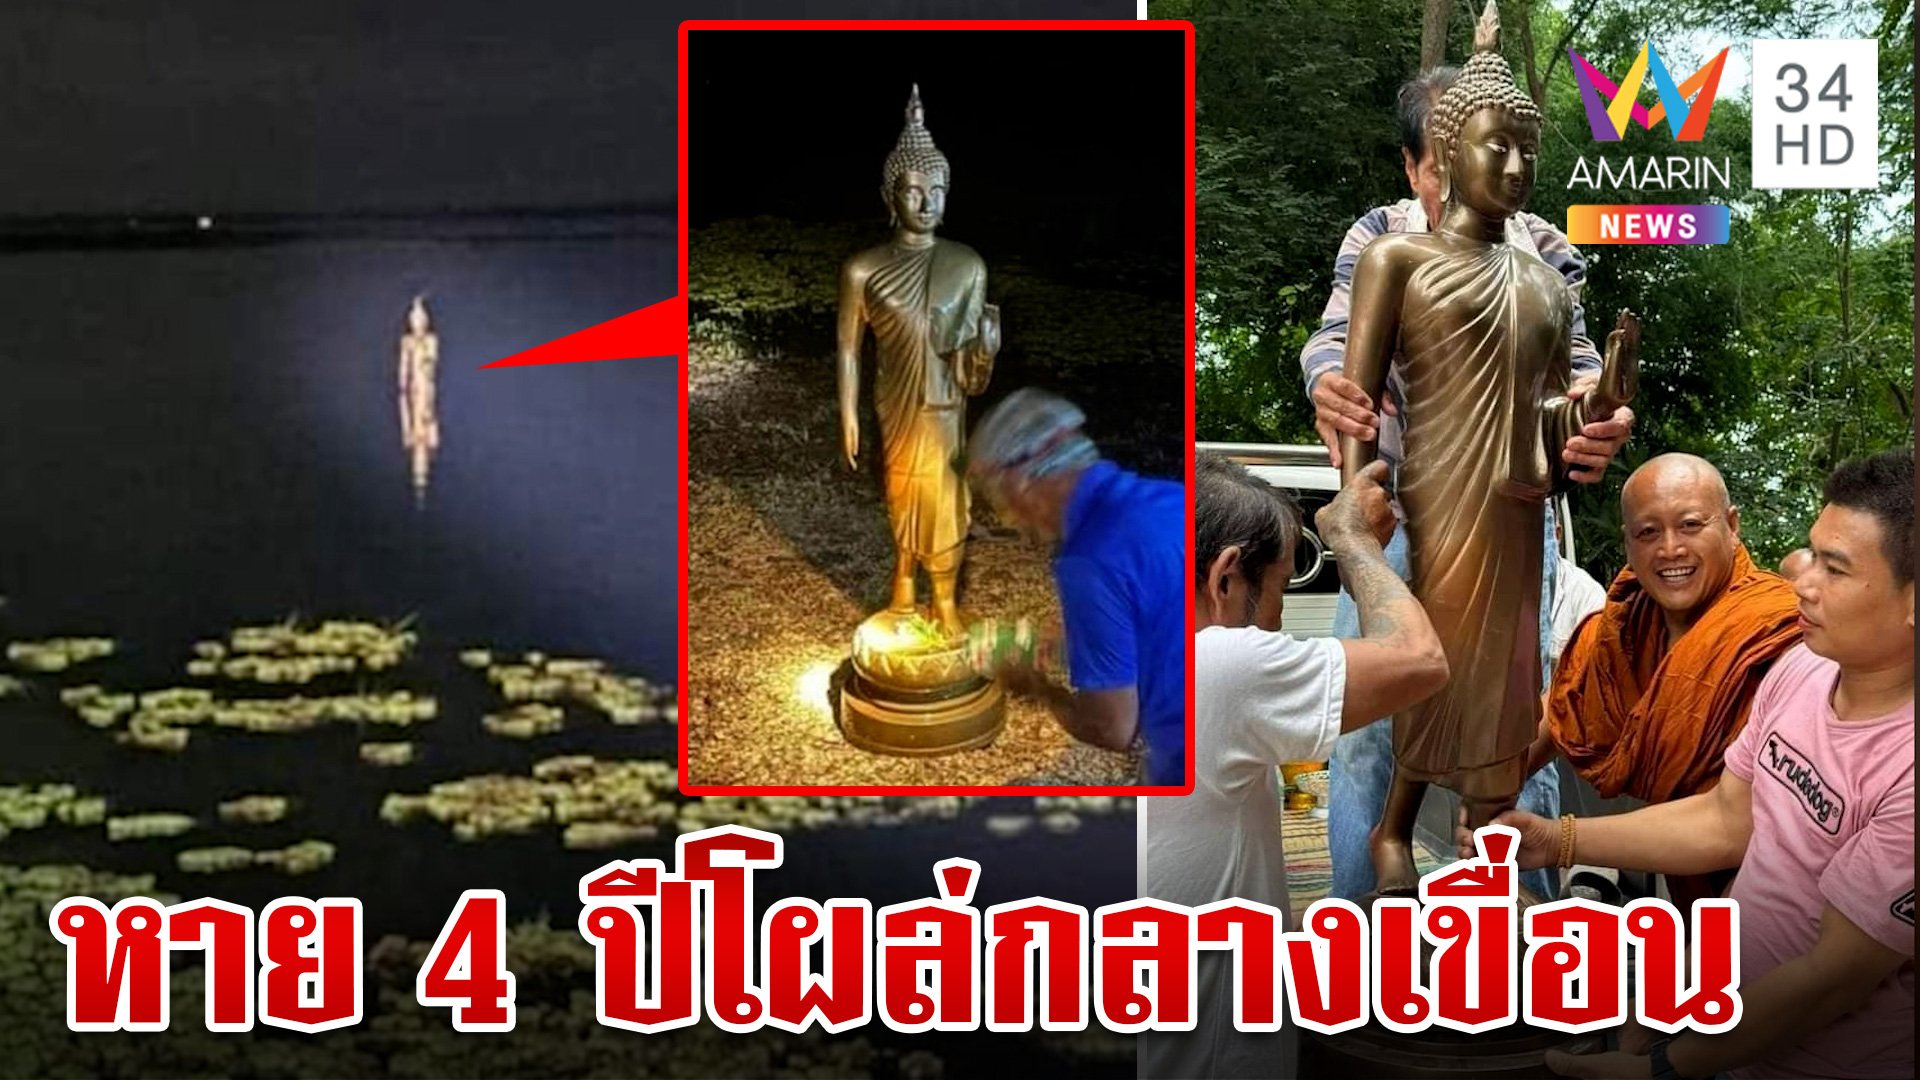 ฮือฮา!พระพุทธรูปหายไป 4 ปี ก่อนโผล่ลอยน้ำกลางเขื่อนในวันเข้าพรรษา | ทุบโต๊ะข่าว | 26 ก.ค. 67 | AMARIN TVHD34